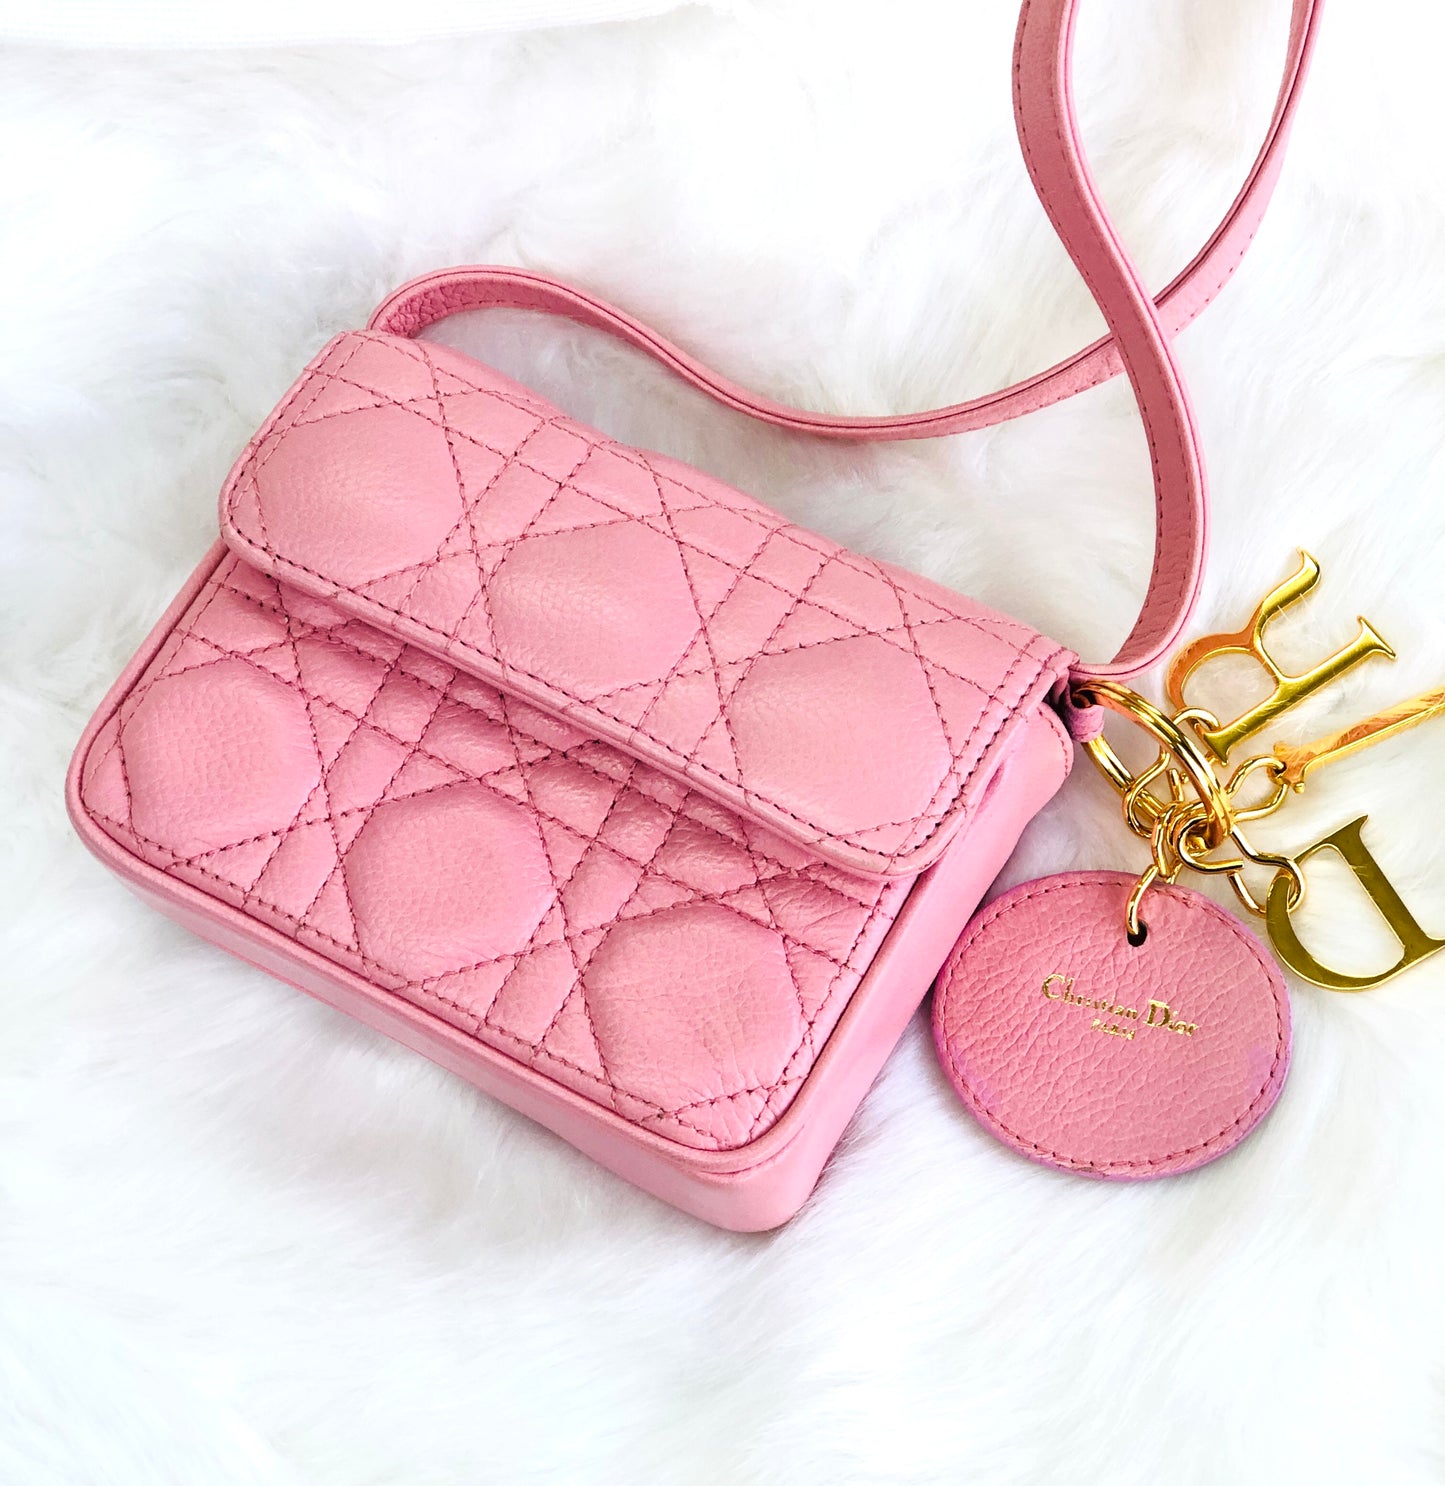 Christian Dior CD charm embossed leather cannage lady dior mini bag pochette shoulder bag pink vintage old xvff7k